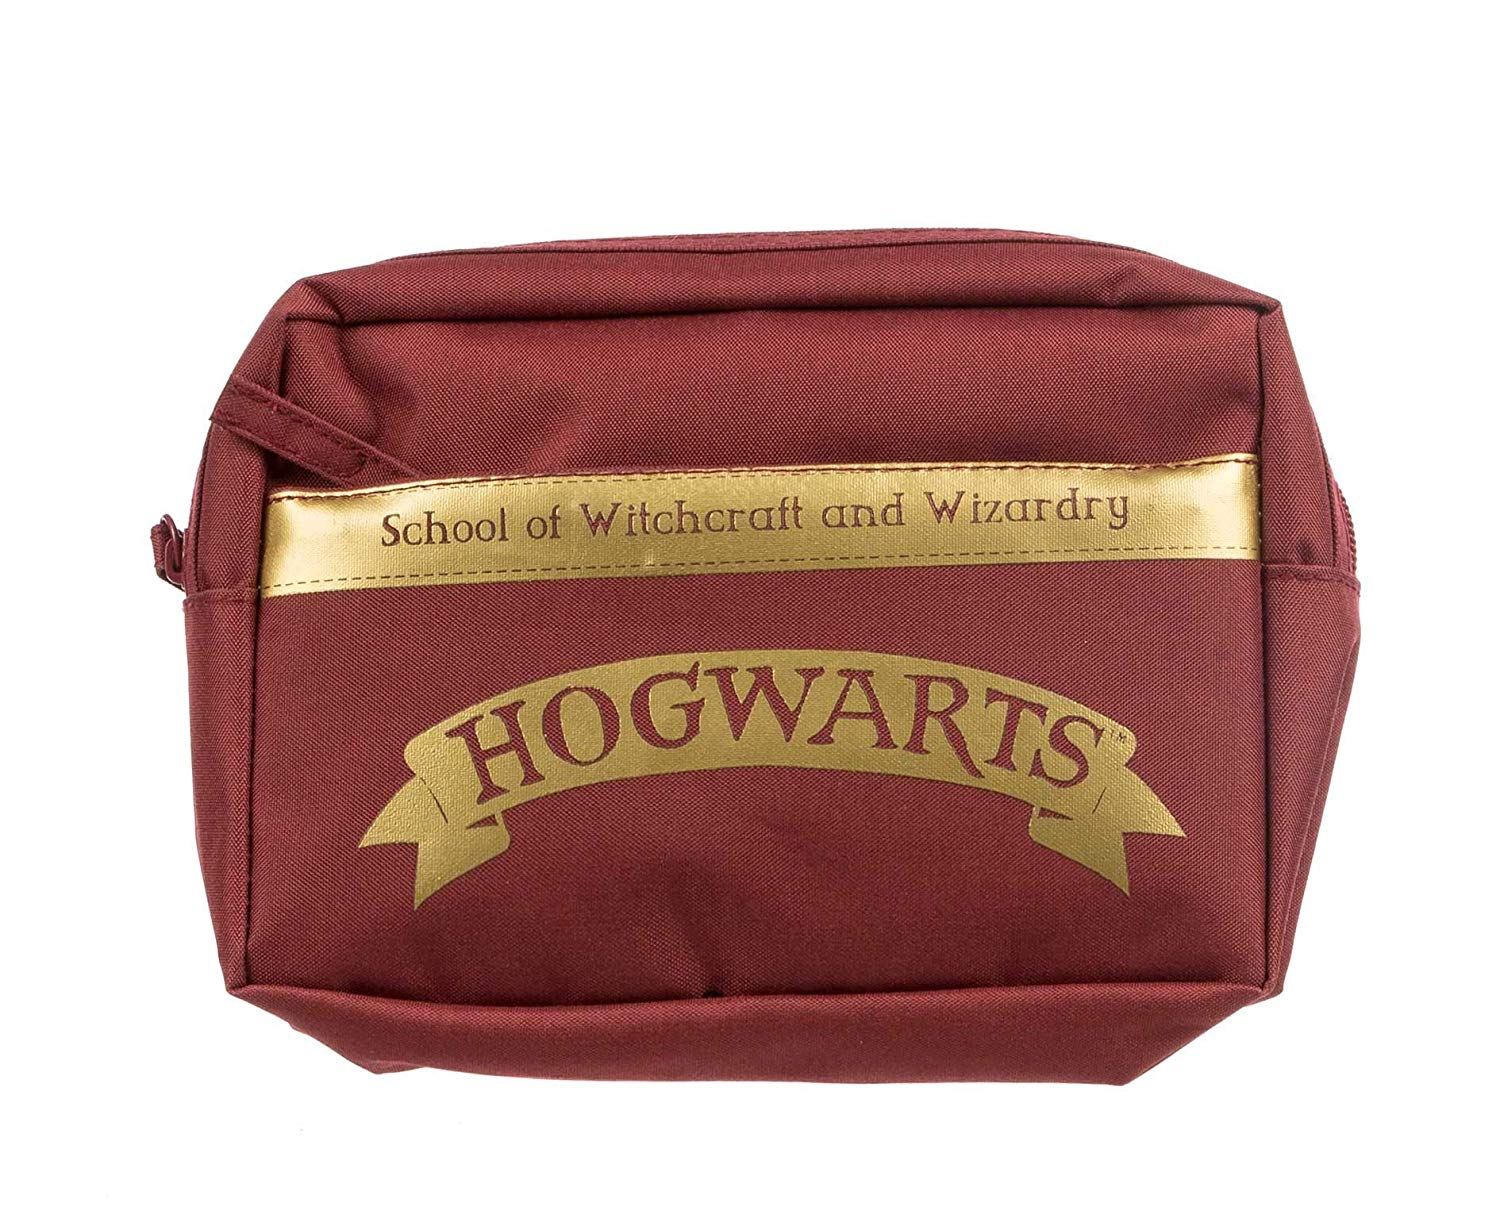 Harry Potter Burgundy Pencil Case Stationery